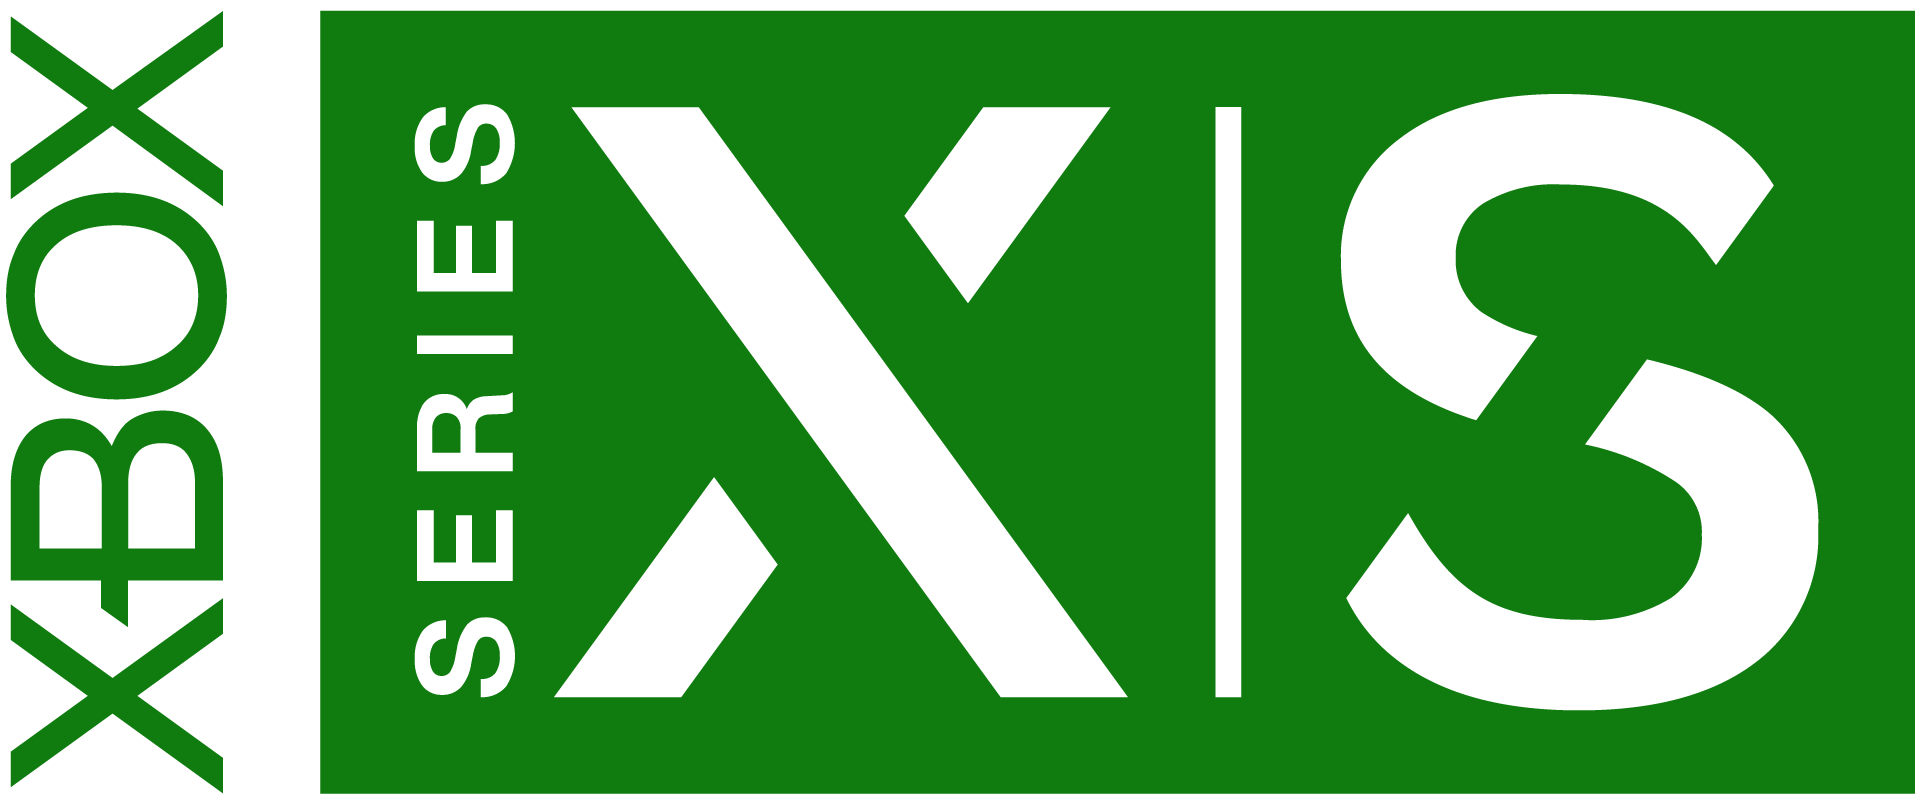 xbox_serie